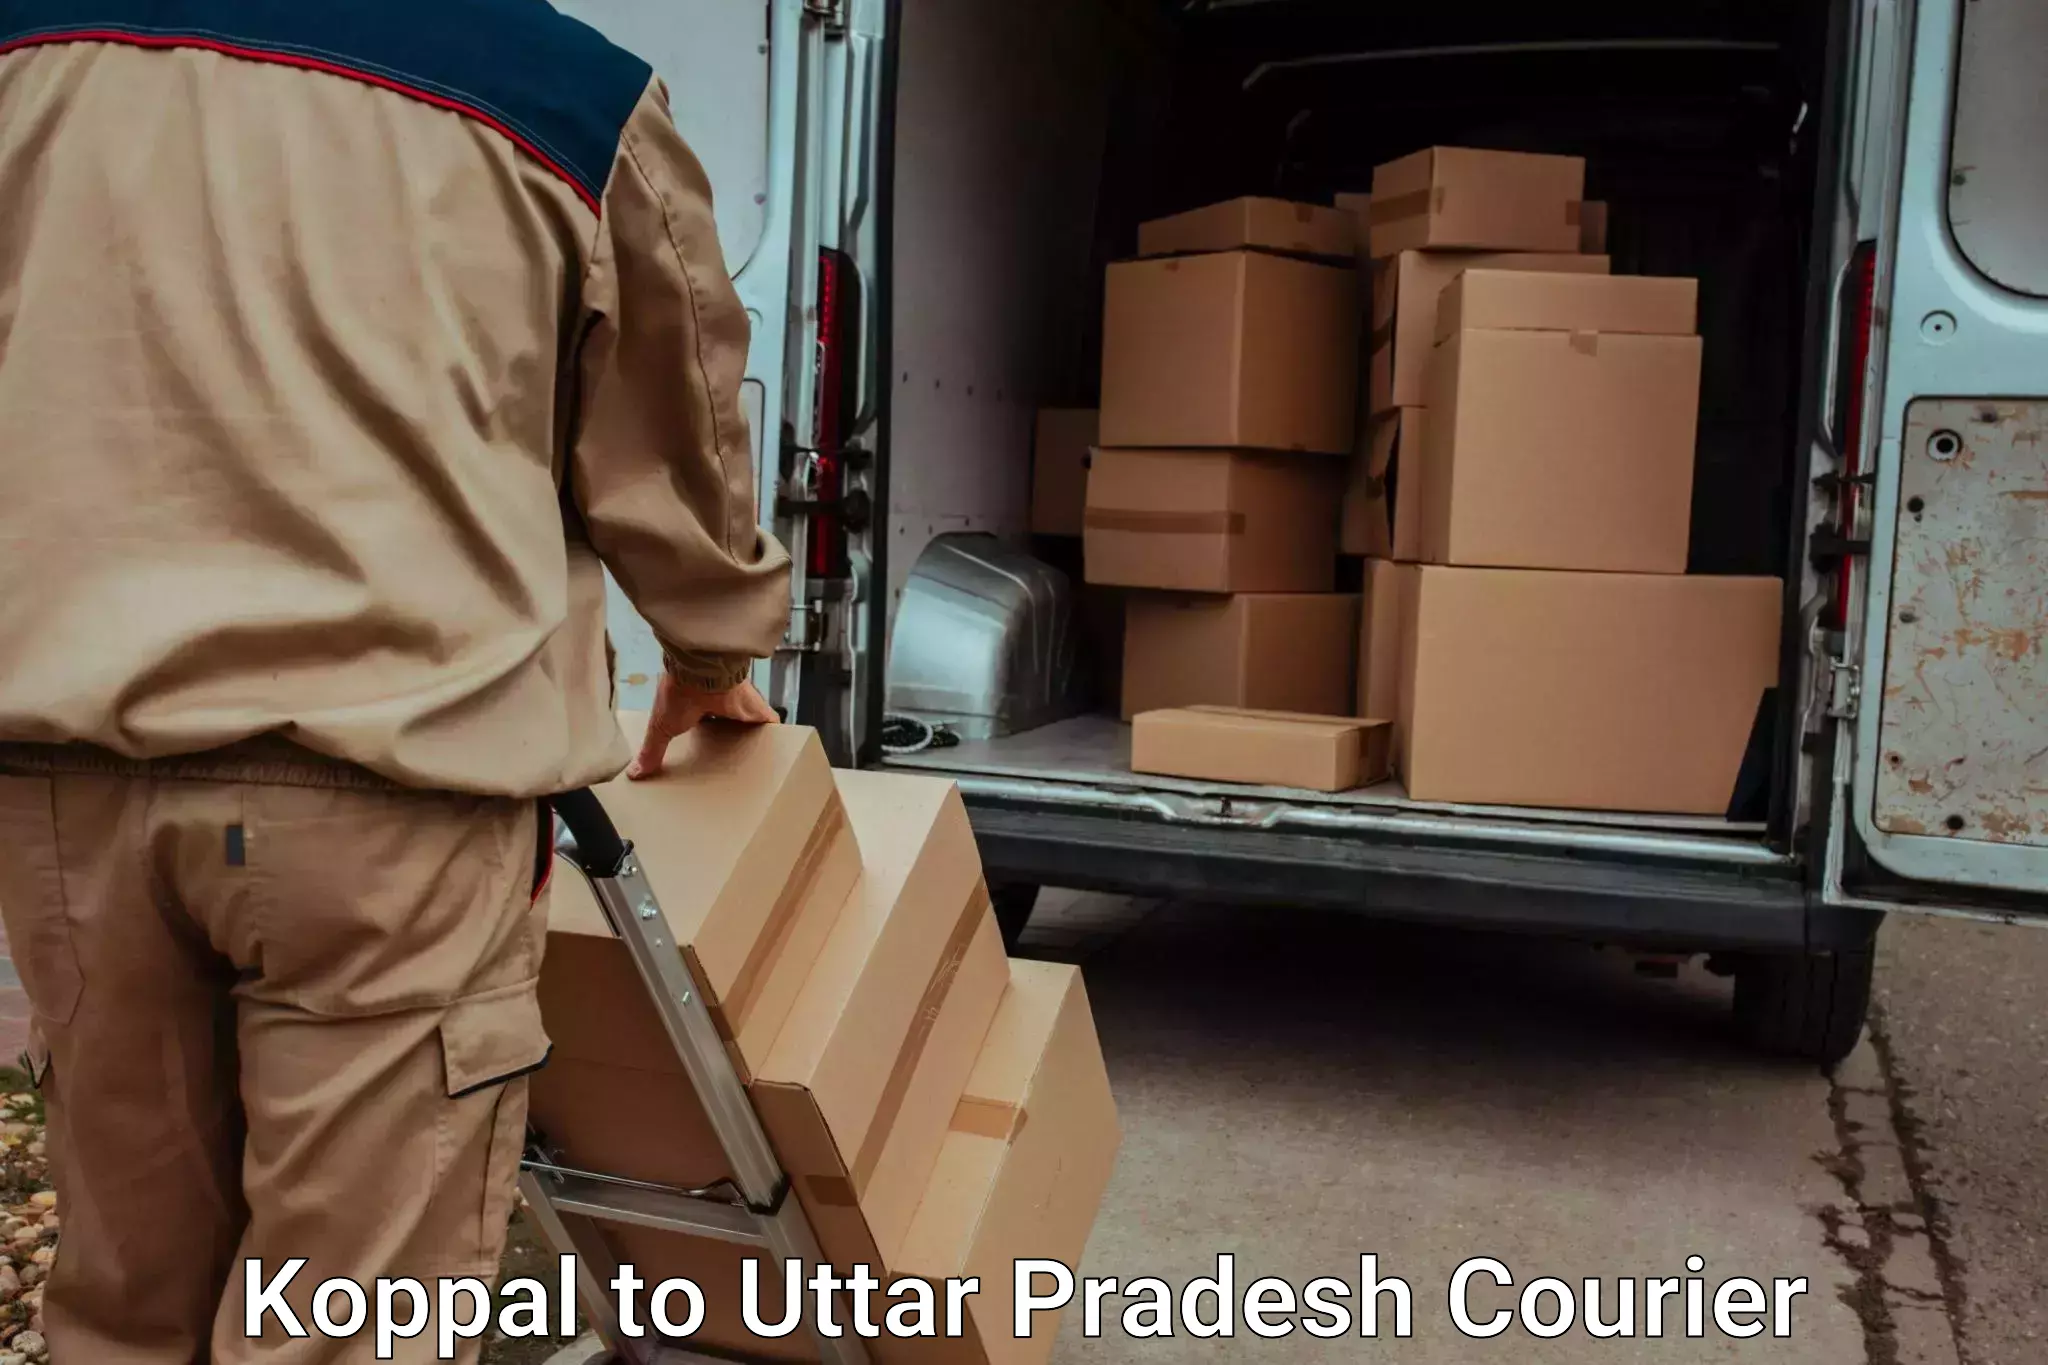 Professional moving company Koppal to Sirathu